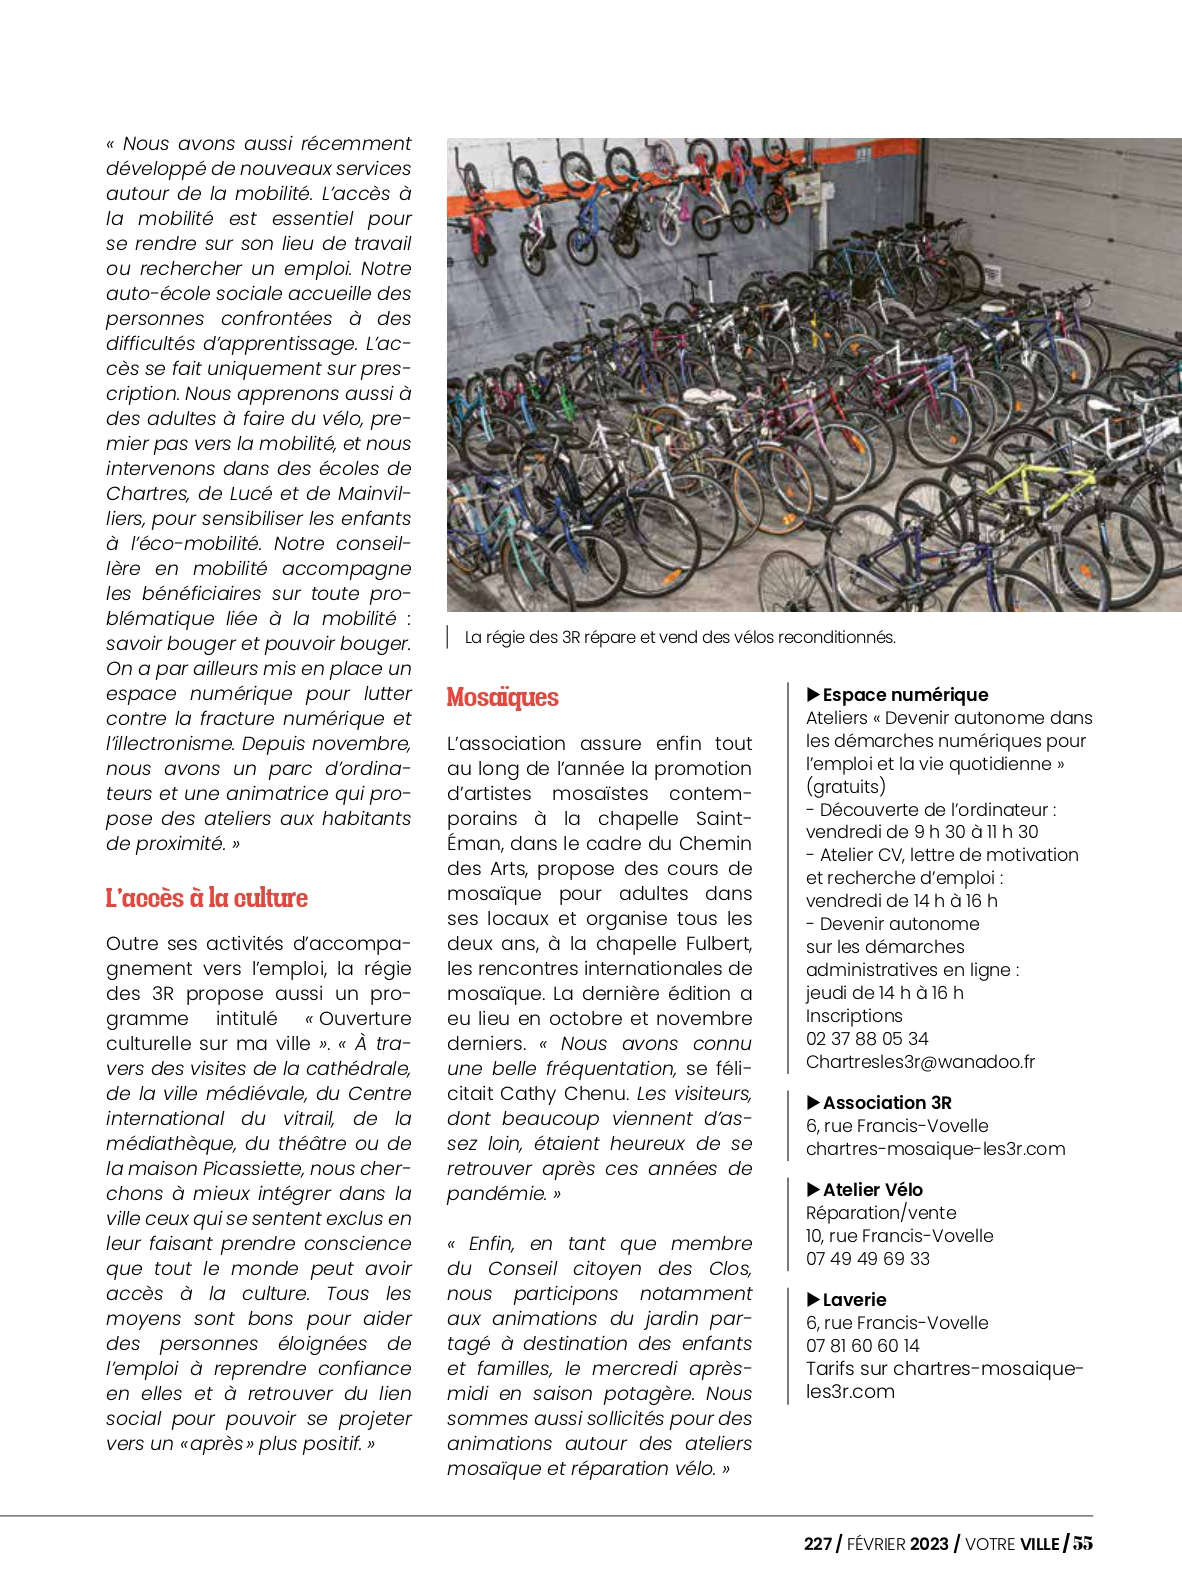 Magazine Votre Ville - Février 2023 - Page 2